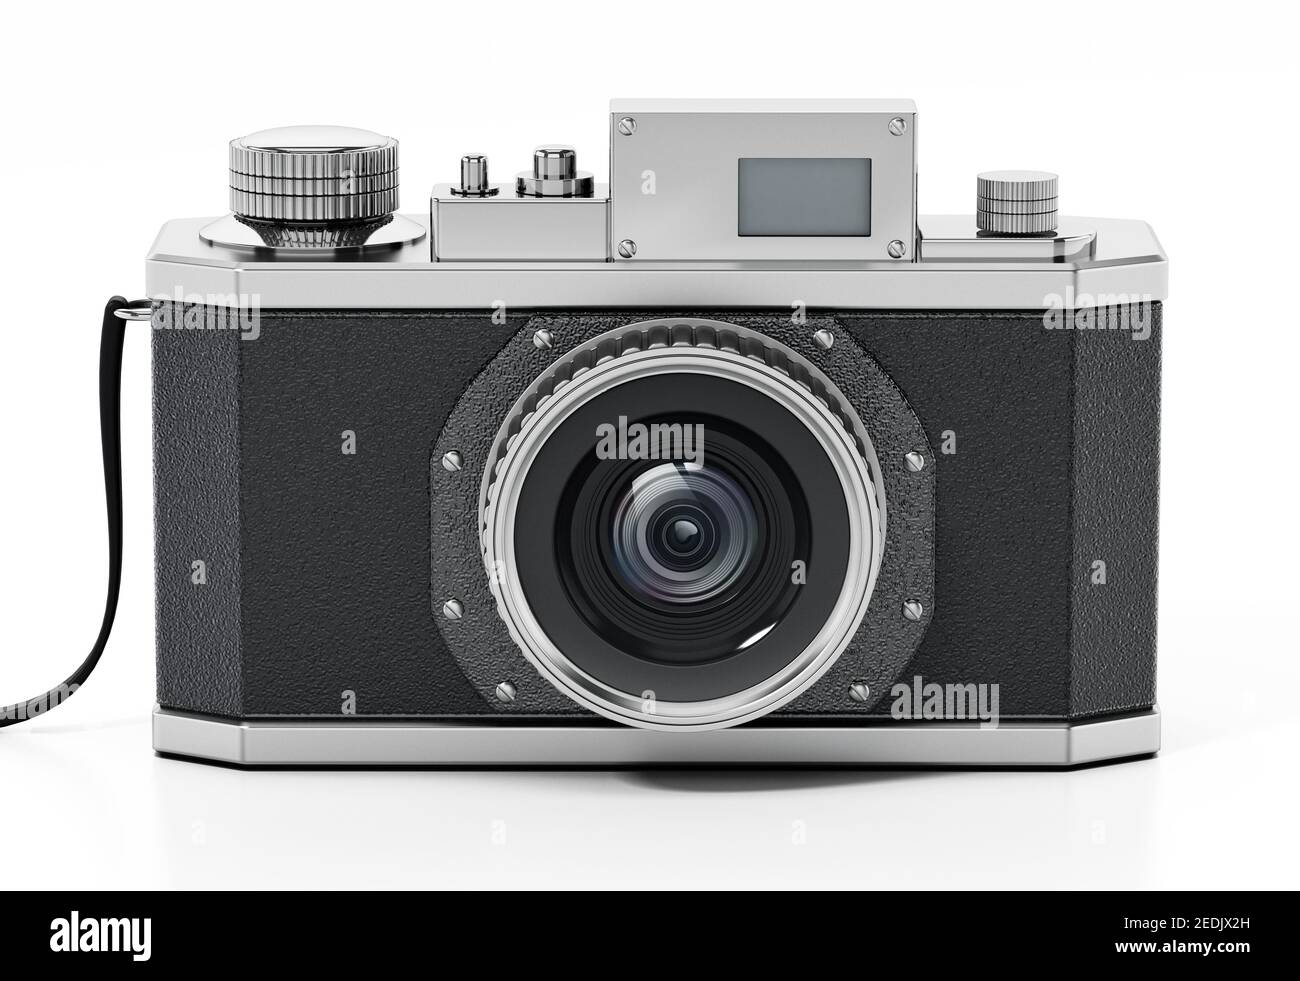 Fotocamera reflex analogica vintage isolata su sfondo bianco. Illustrazione 3D. Foto Stock